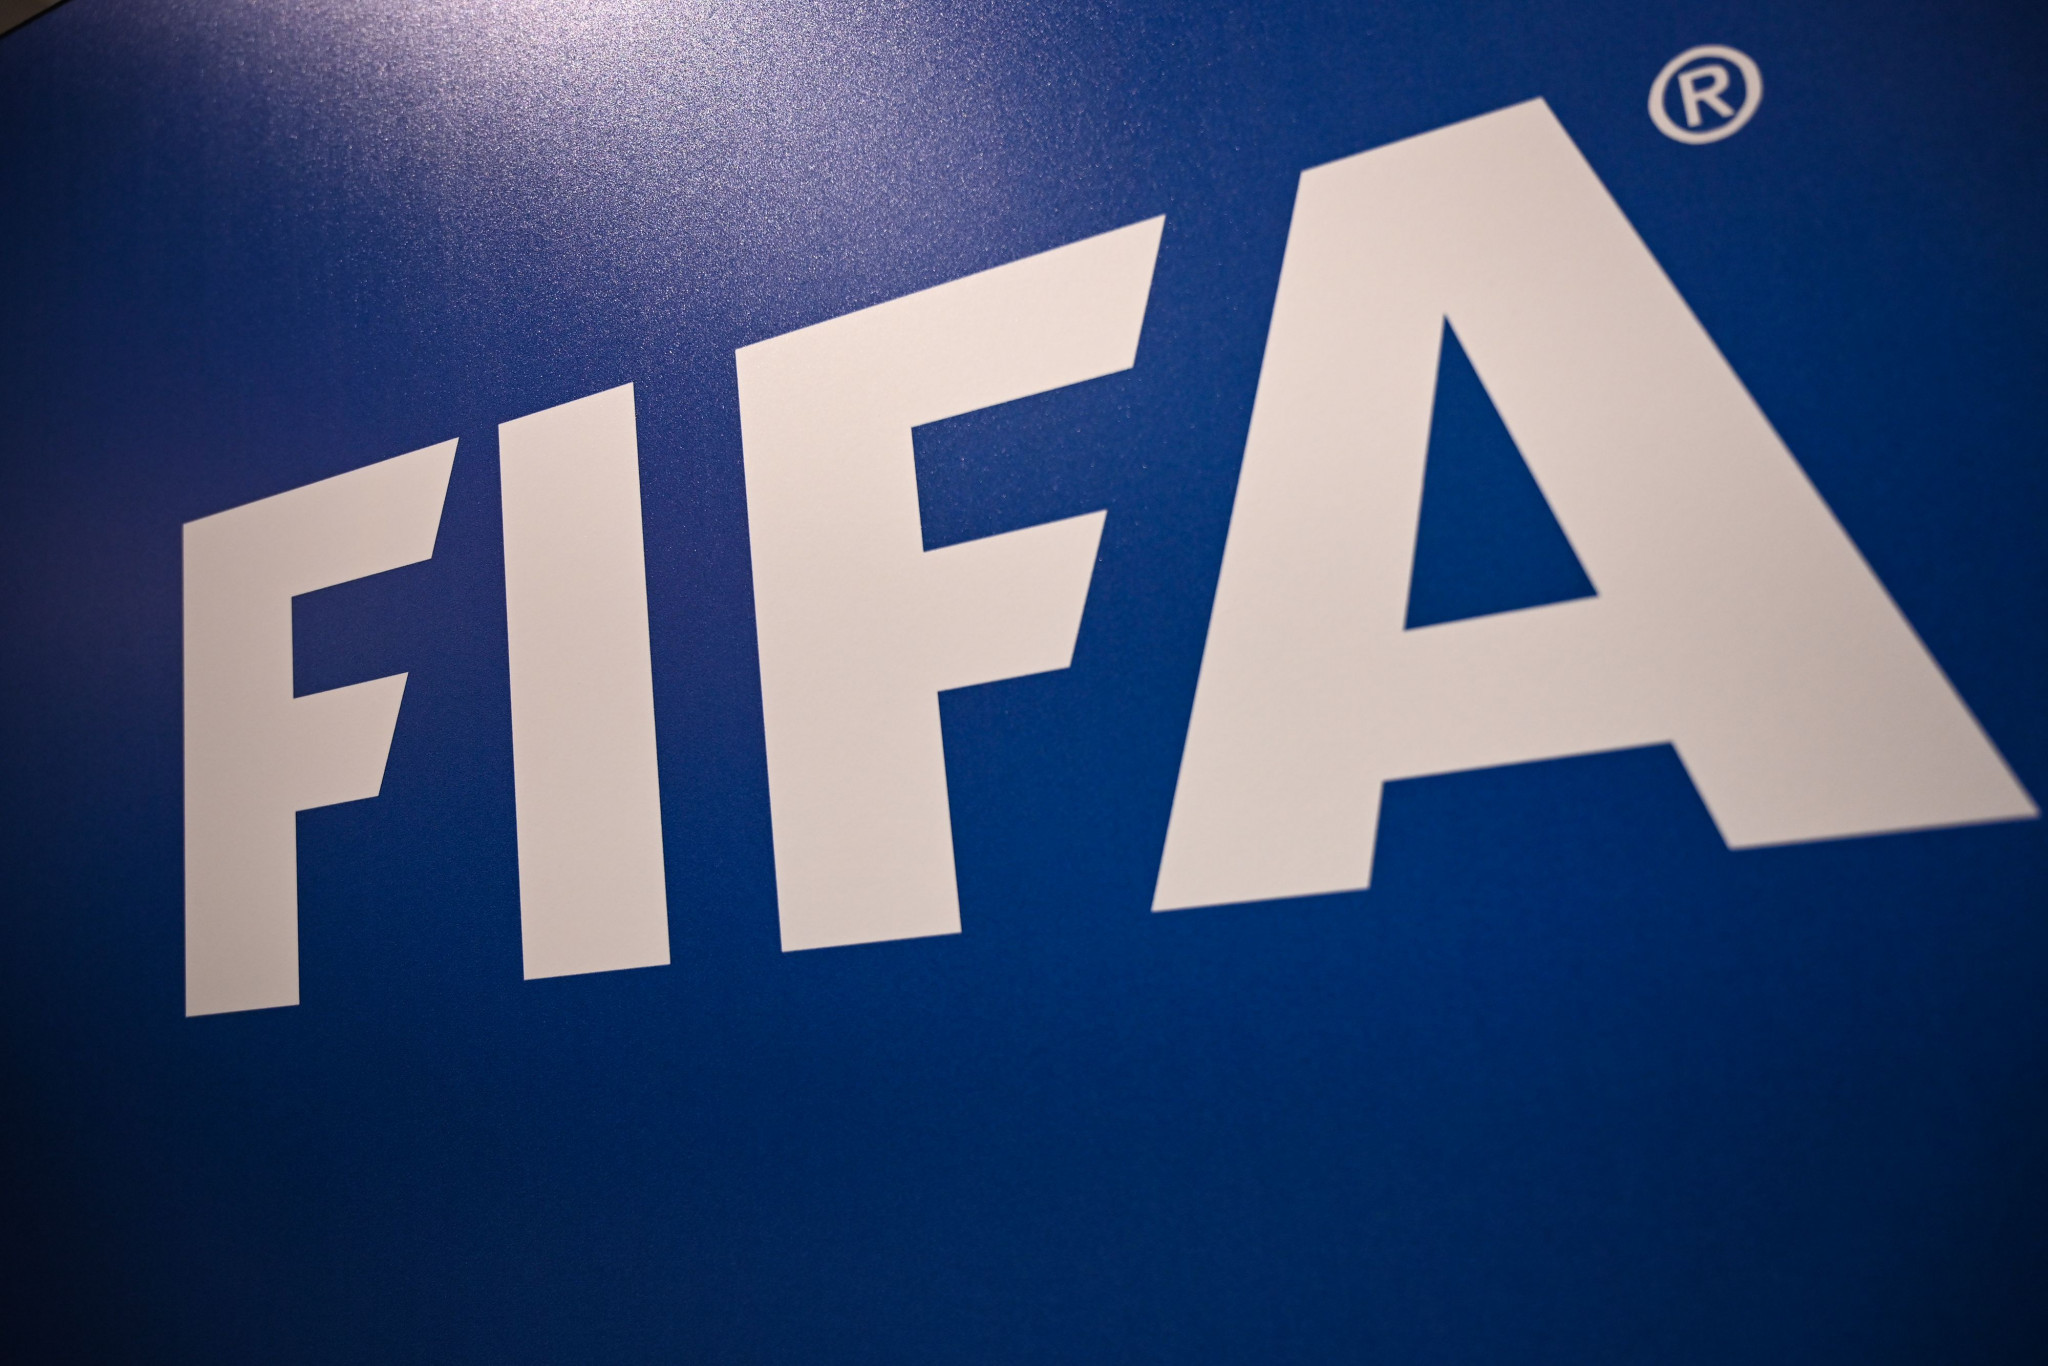 Les états financiers de la FIFA montrent que l'instance dirigeante a souscrit une assurance pour la Coupe du monde Qatar 2022 © Getty Images